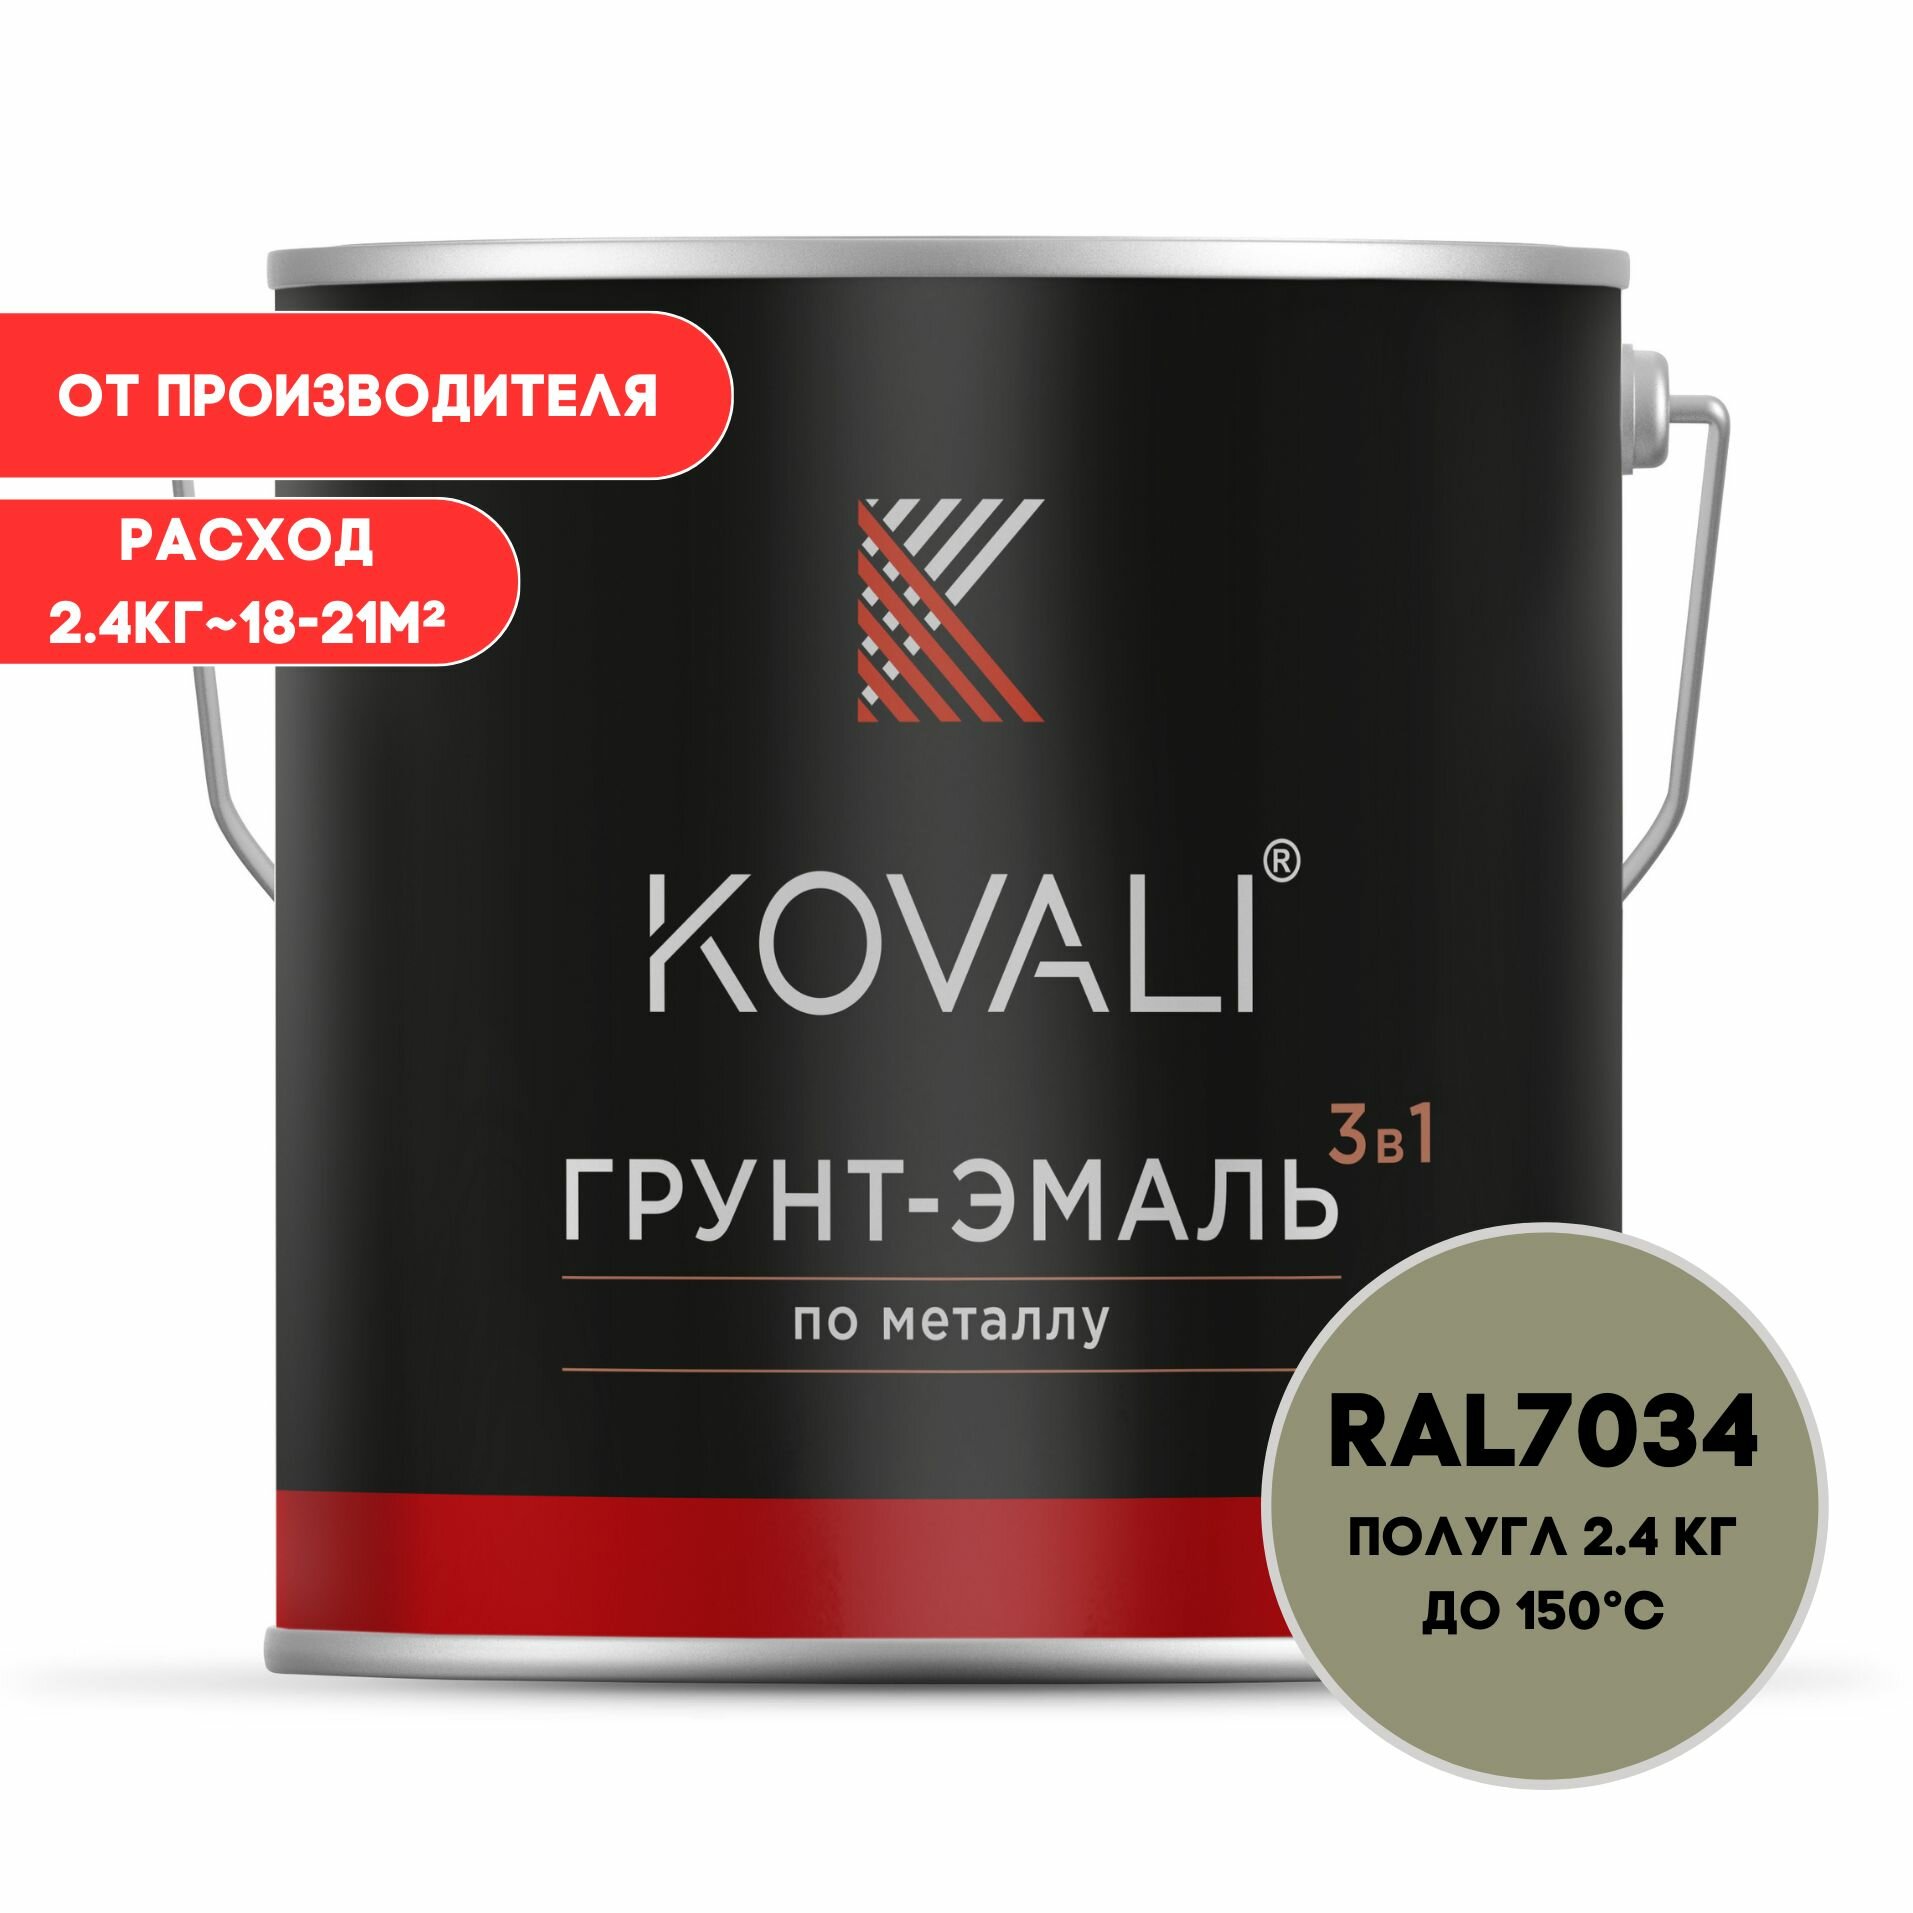 Грунт-эмаль 3 в 1 KOVALI пг Желто-серый RAL 7034 2.4 кг краска по металлу по ржавчине быстросохнущая